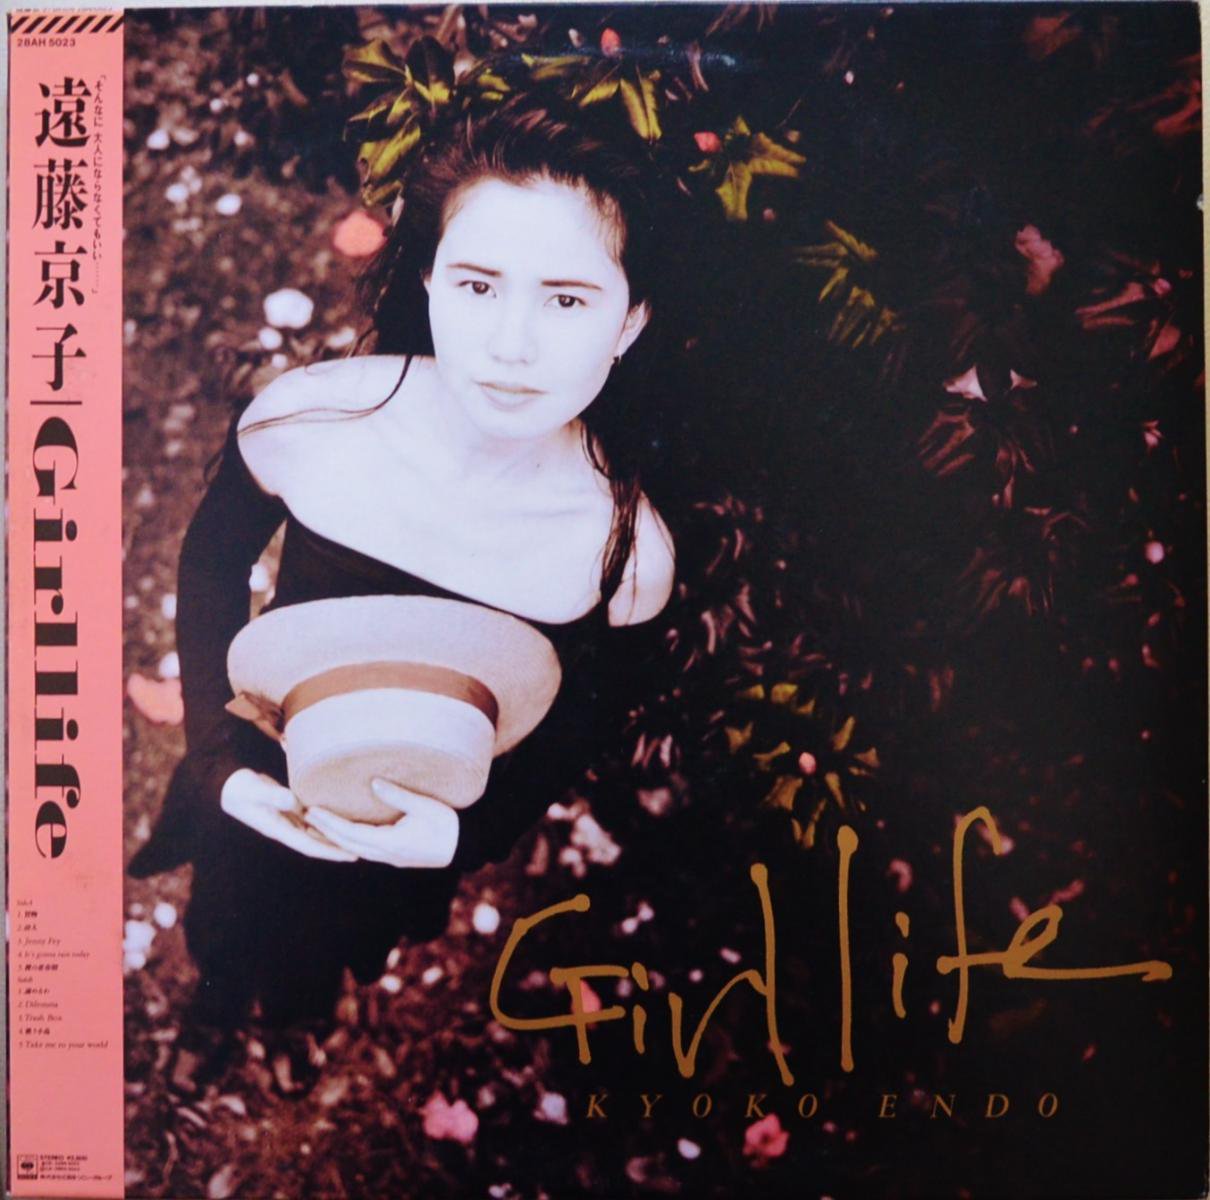 遠藤京子 KYOKO ENDO / ガールライフ GIRLLIFE (LP)